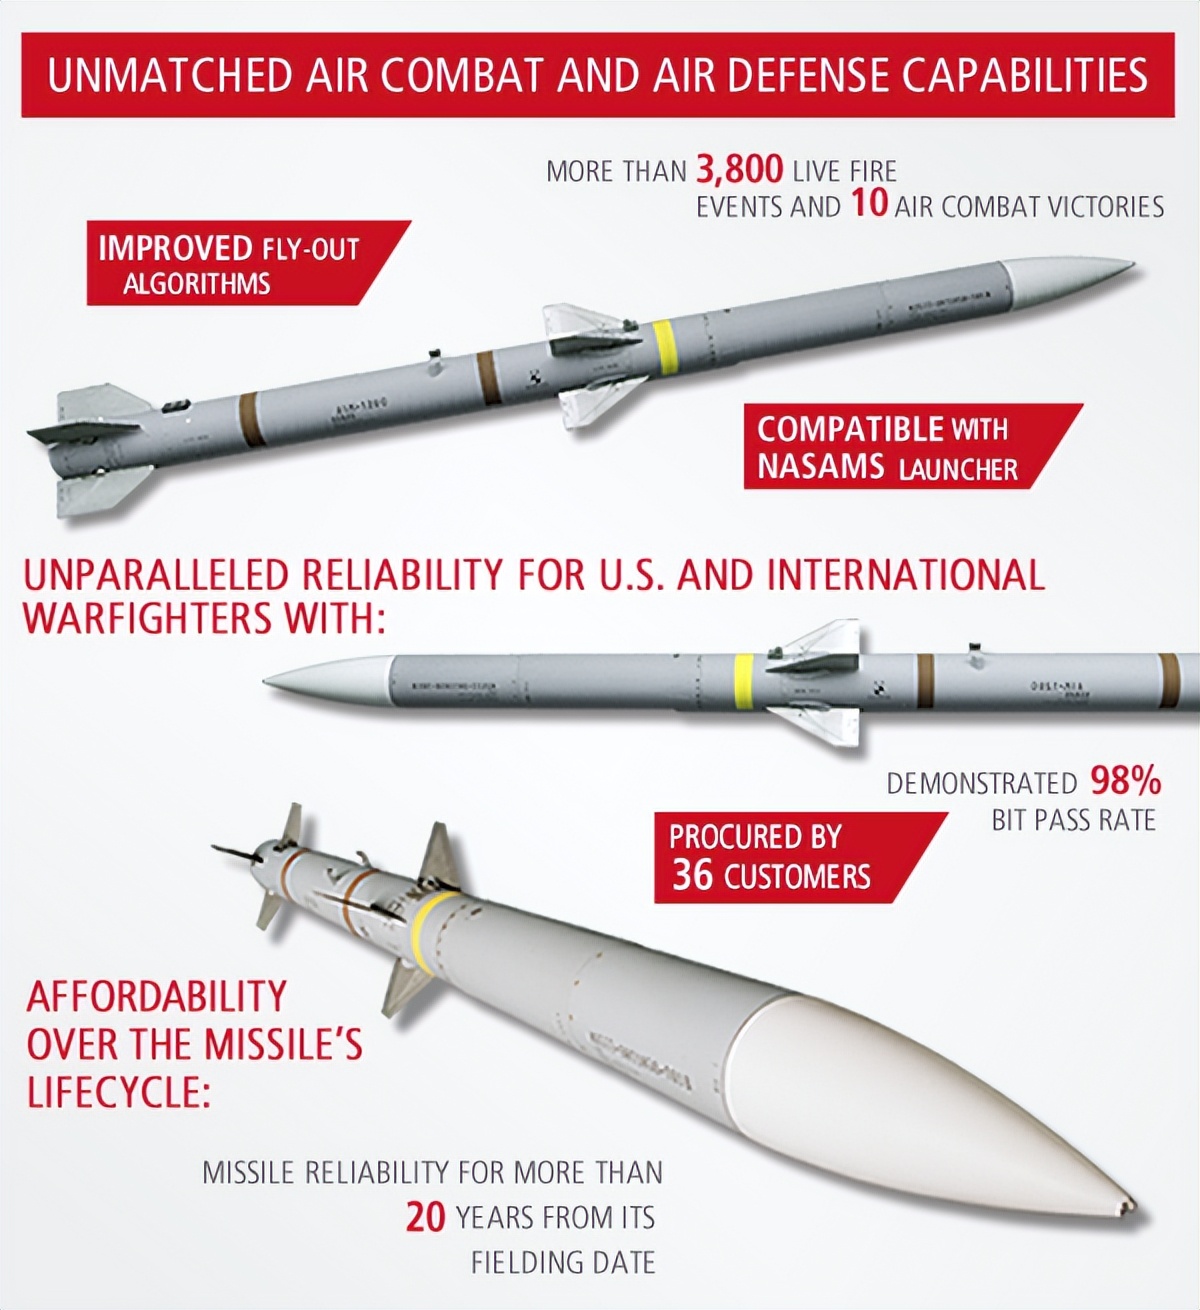 الجيش الأمريكي في حيرة أيضًا: صواريخ جو-جو بعيدة المدى من طراز PL-17 تهاجم من مسافة 400 كيلومتر، وطائرات الإنذار المبكر عاجزة